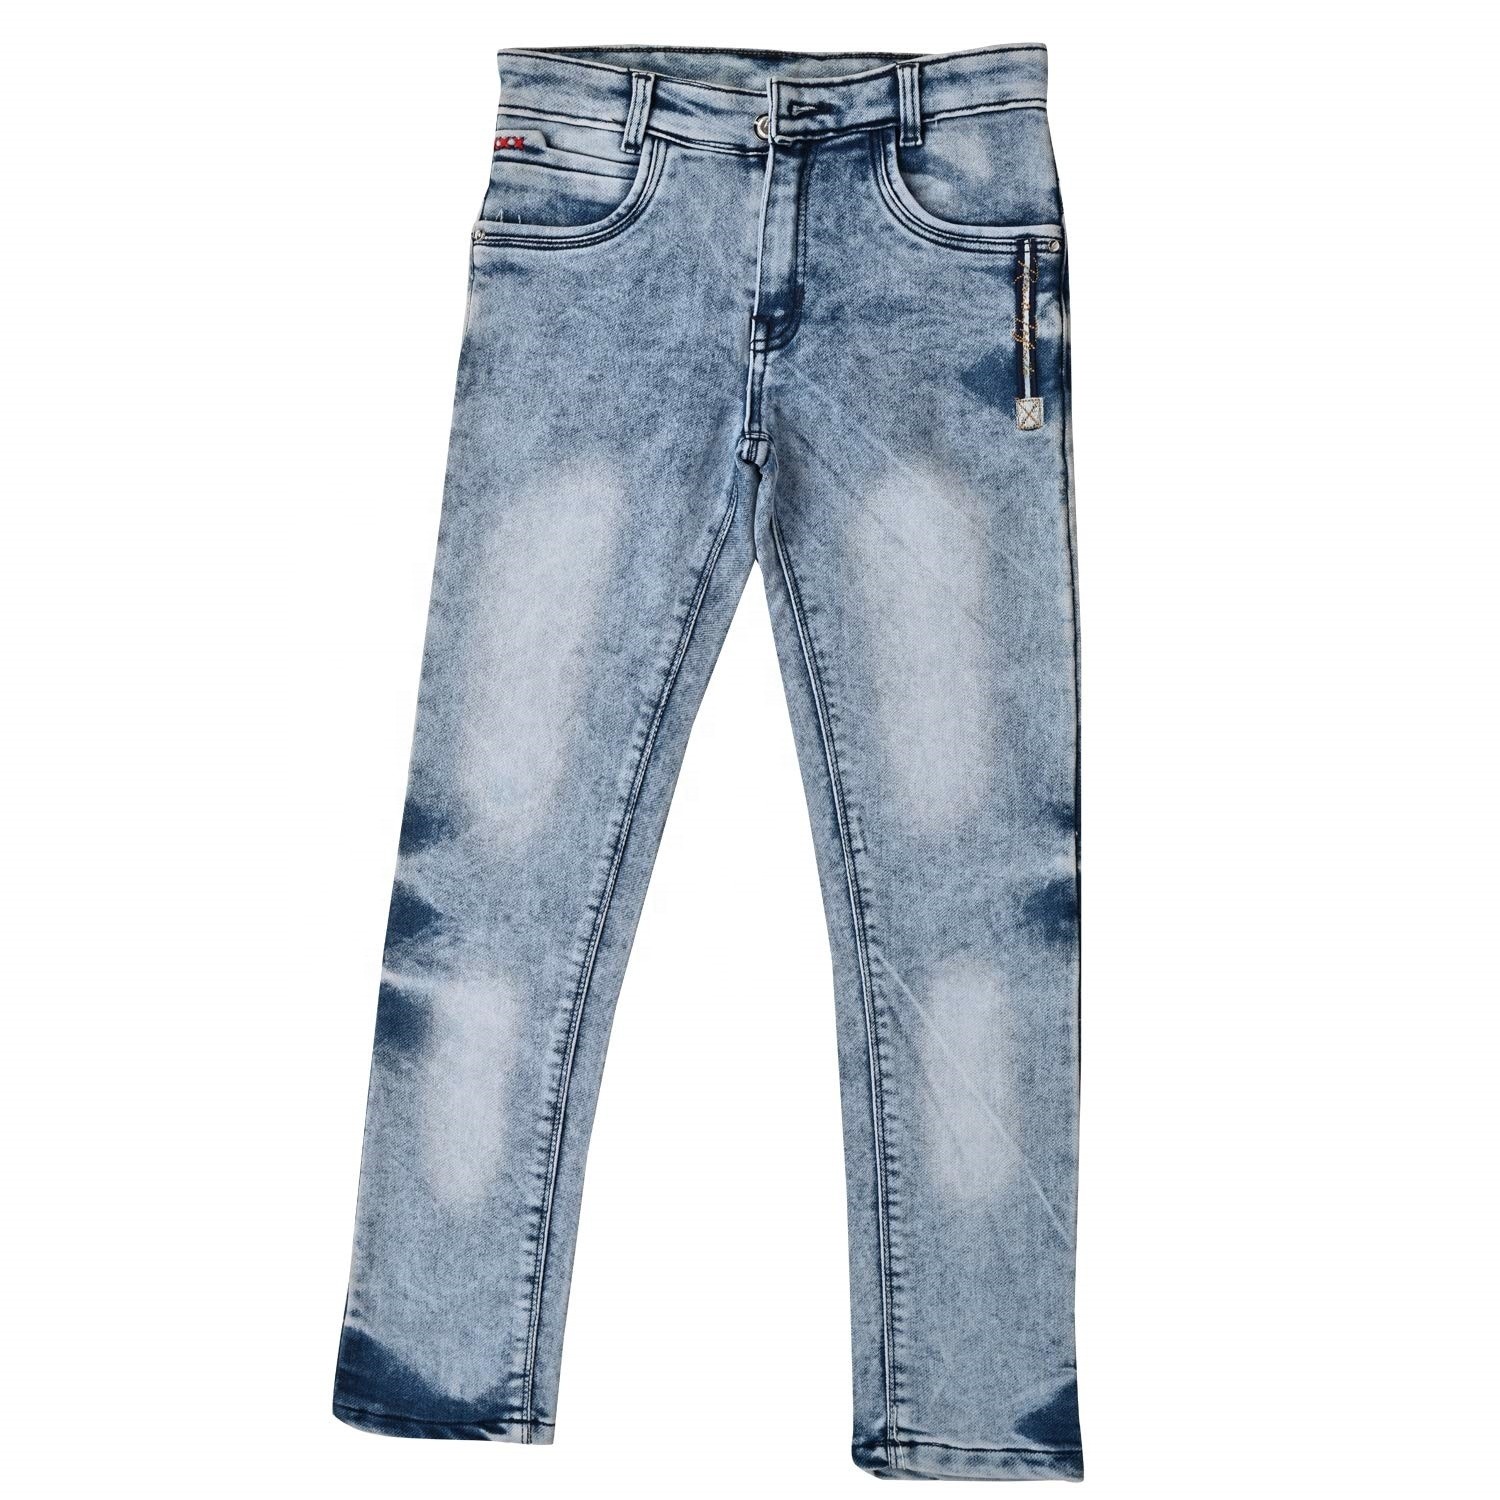 Boys Softy Jeans Full Length Denim Slim Pant for Kids